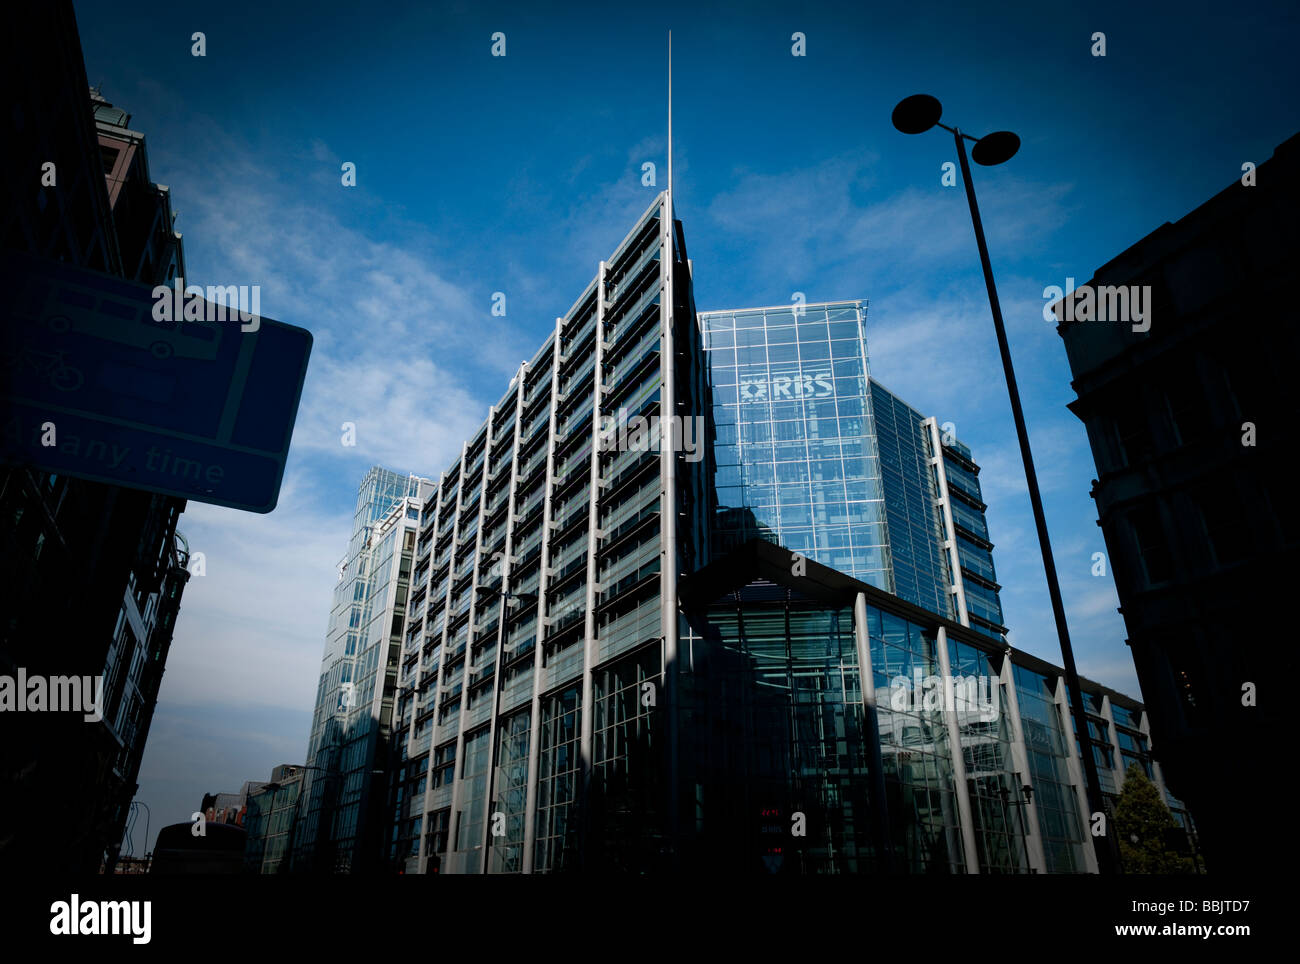 Vue de l'immeuble de bureaux RBS près de Liverpool Street à l'Est de la ville de Londres, Royaume-Uni, Grande Bretagne, Angleterre Banque D'Images